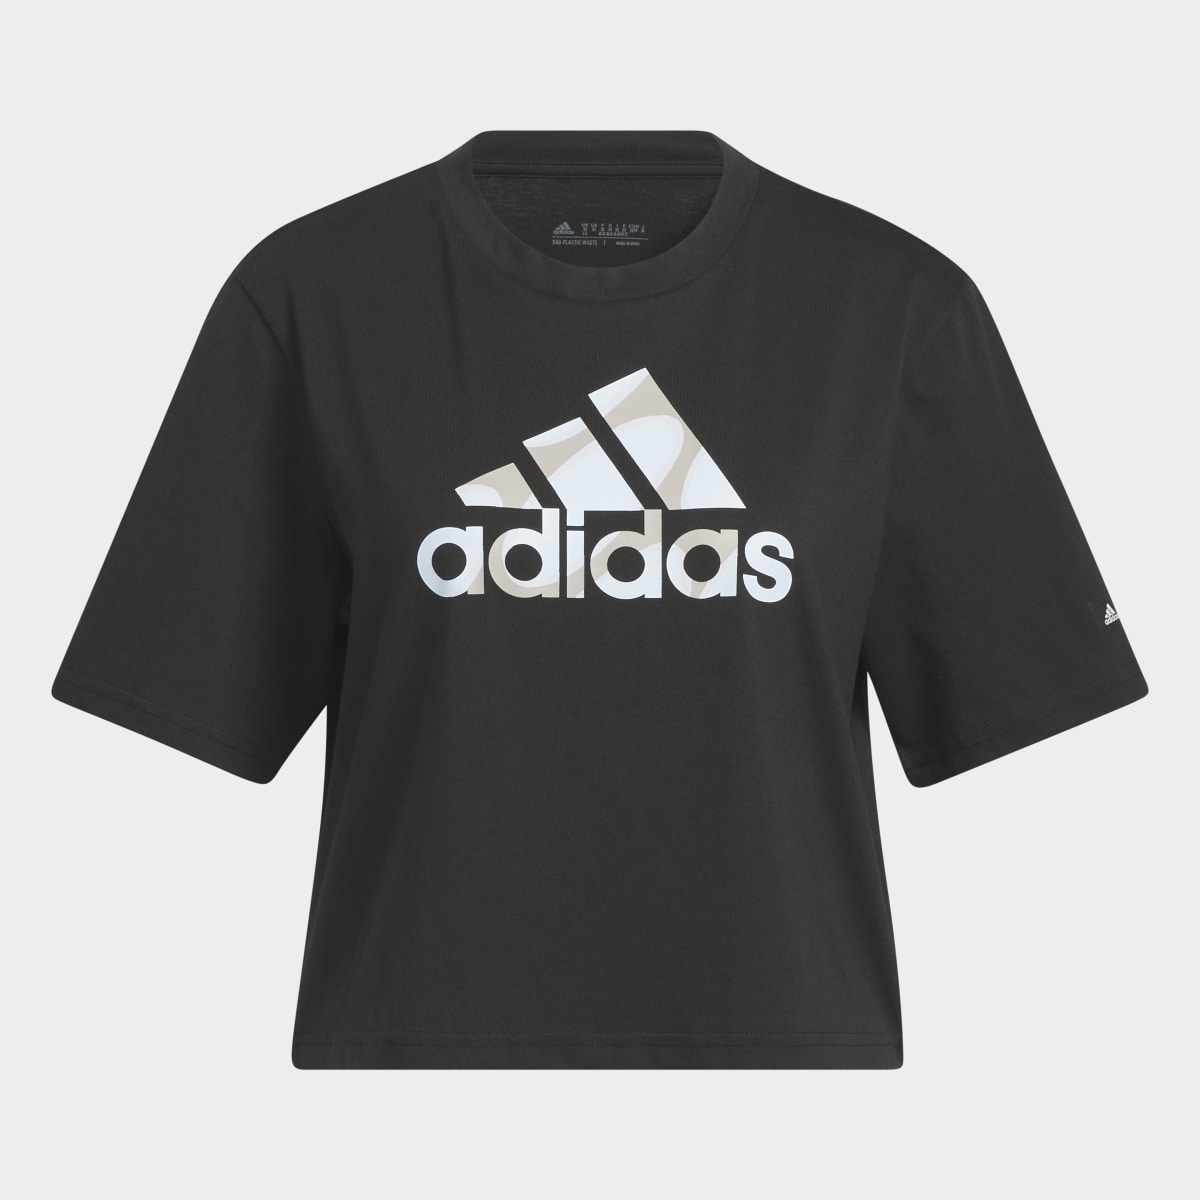 Adidas Marimekko Crop T-Shirt. 5